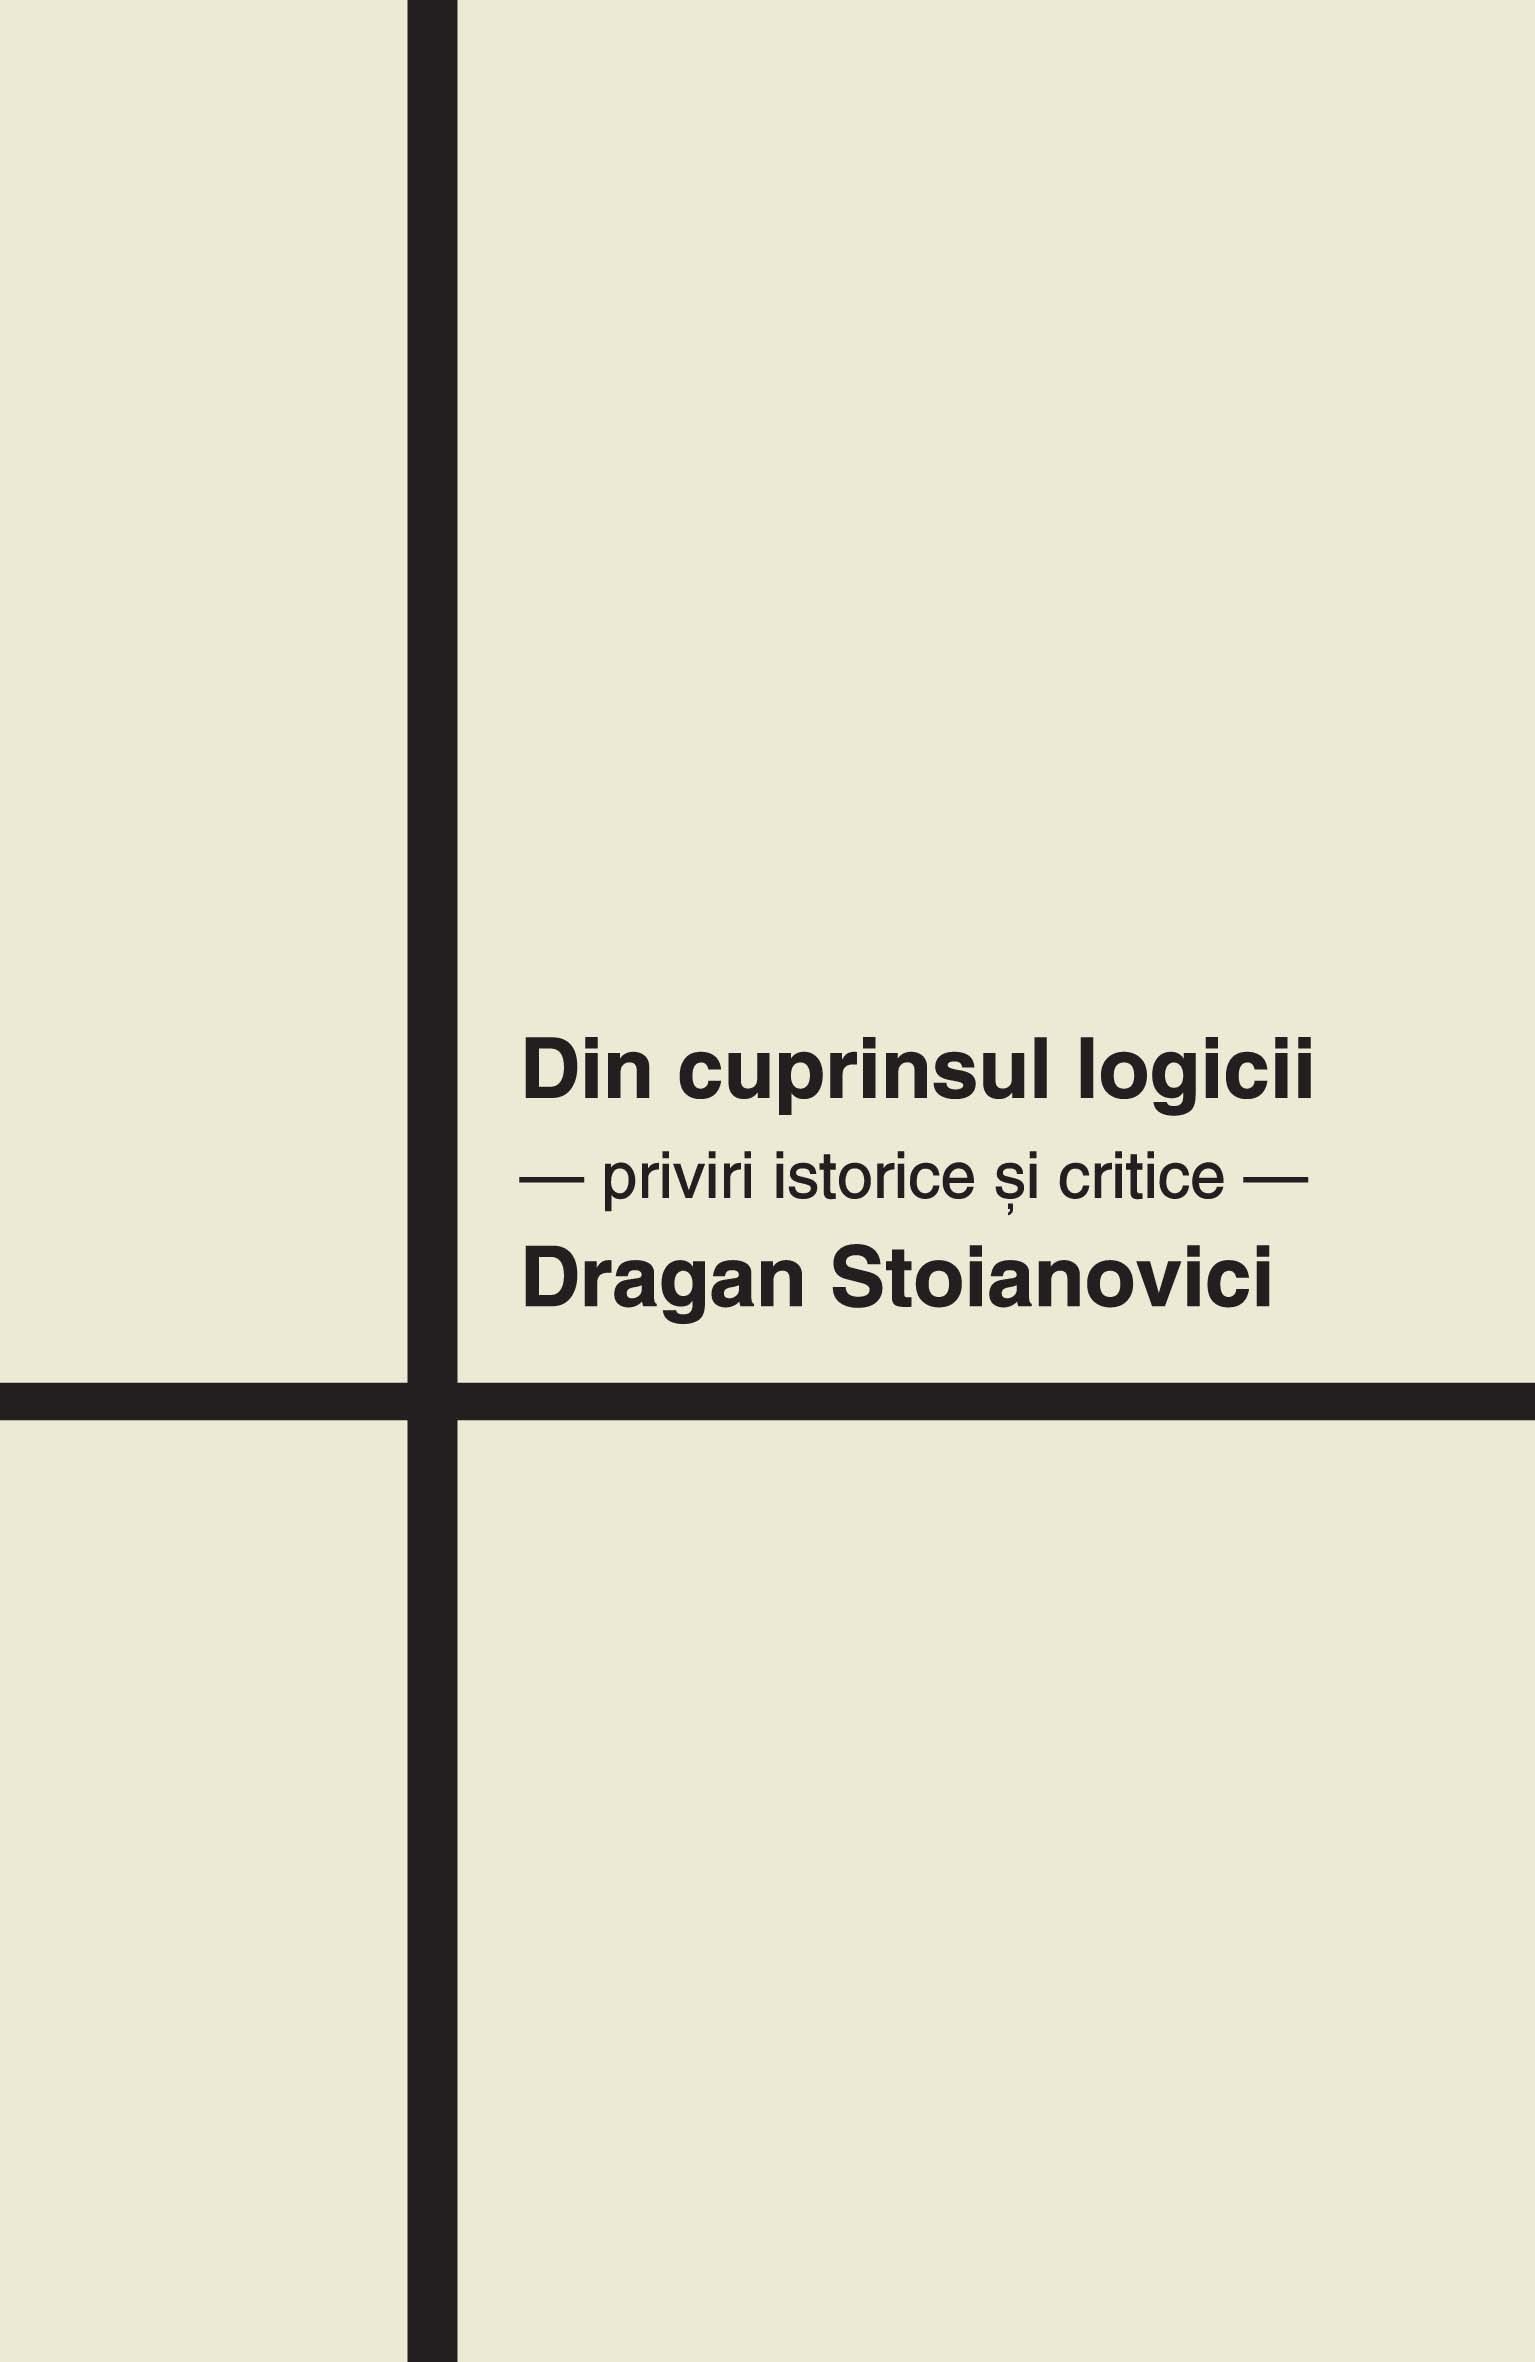 Din cuprinsul logicii - Dragan Stoianovici